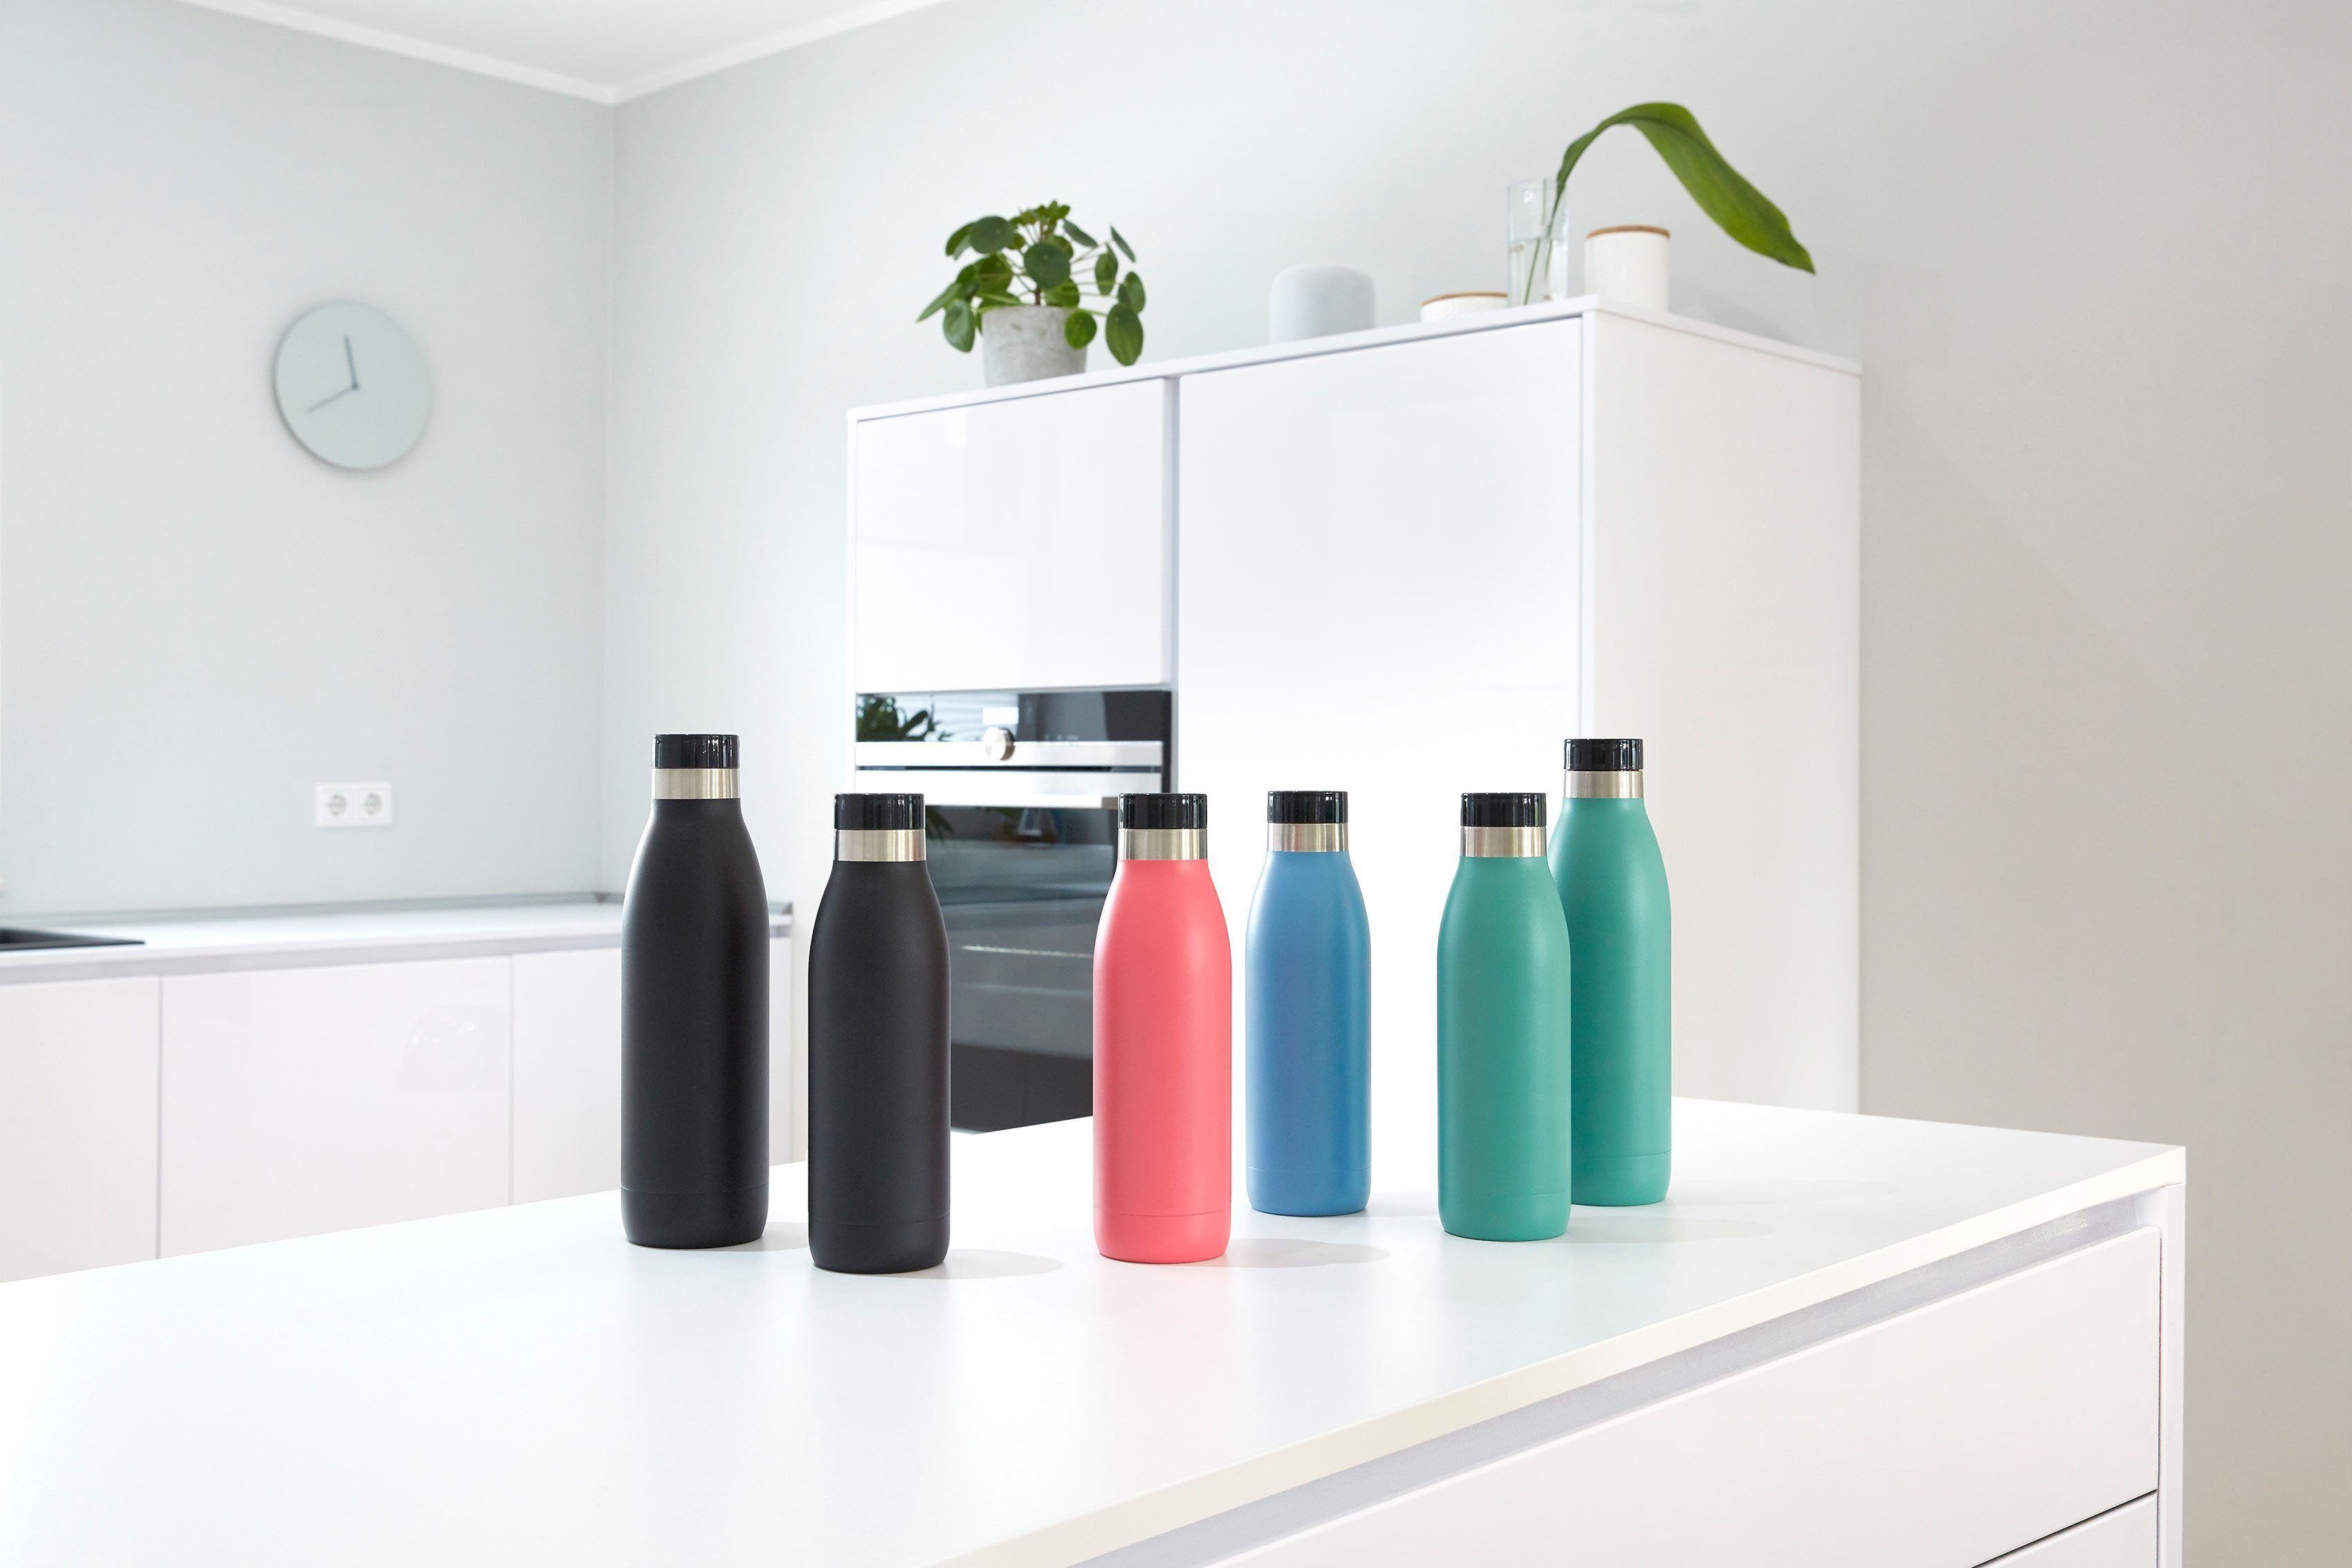 Emsa Trinkflasche Bludrop Color, Edelstahl, schwarz 12h kühl, warm/24h spülmaschinenfest Deckel, Quick-Press